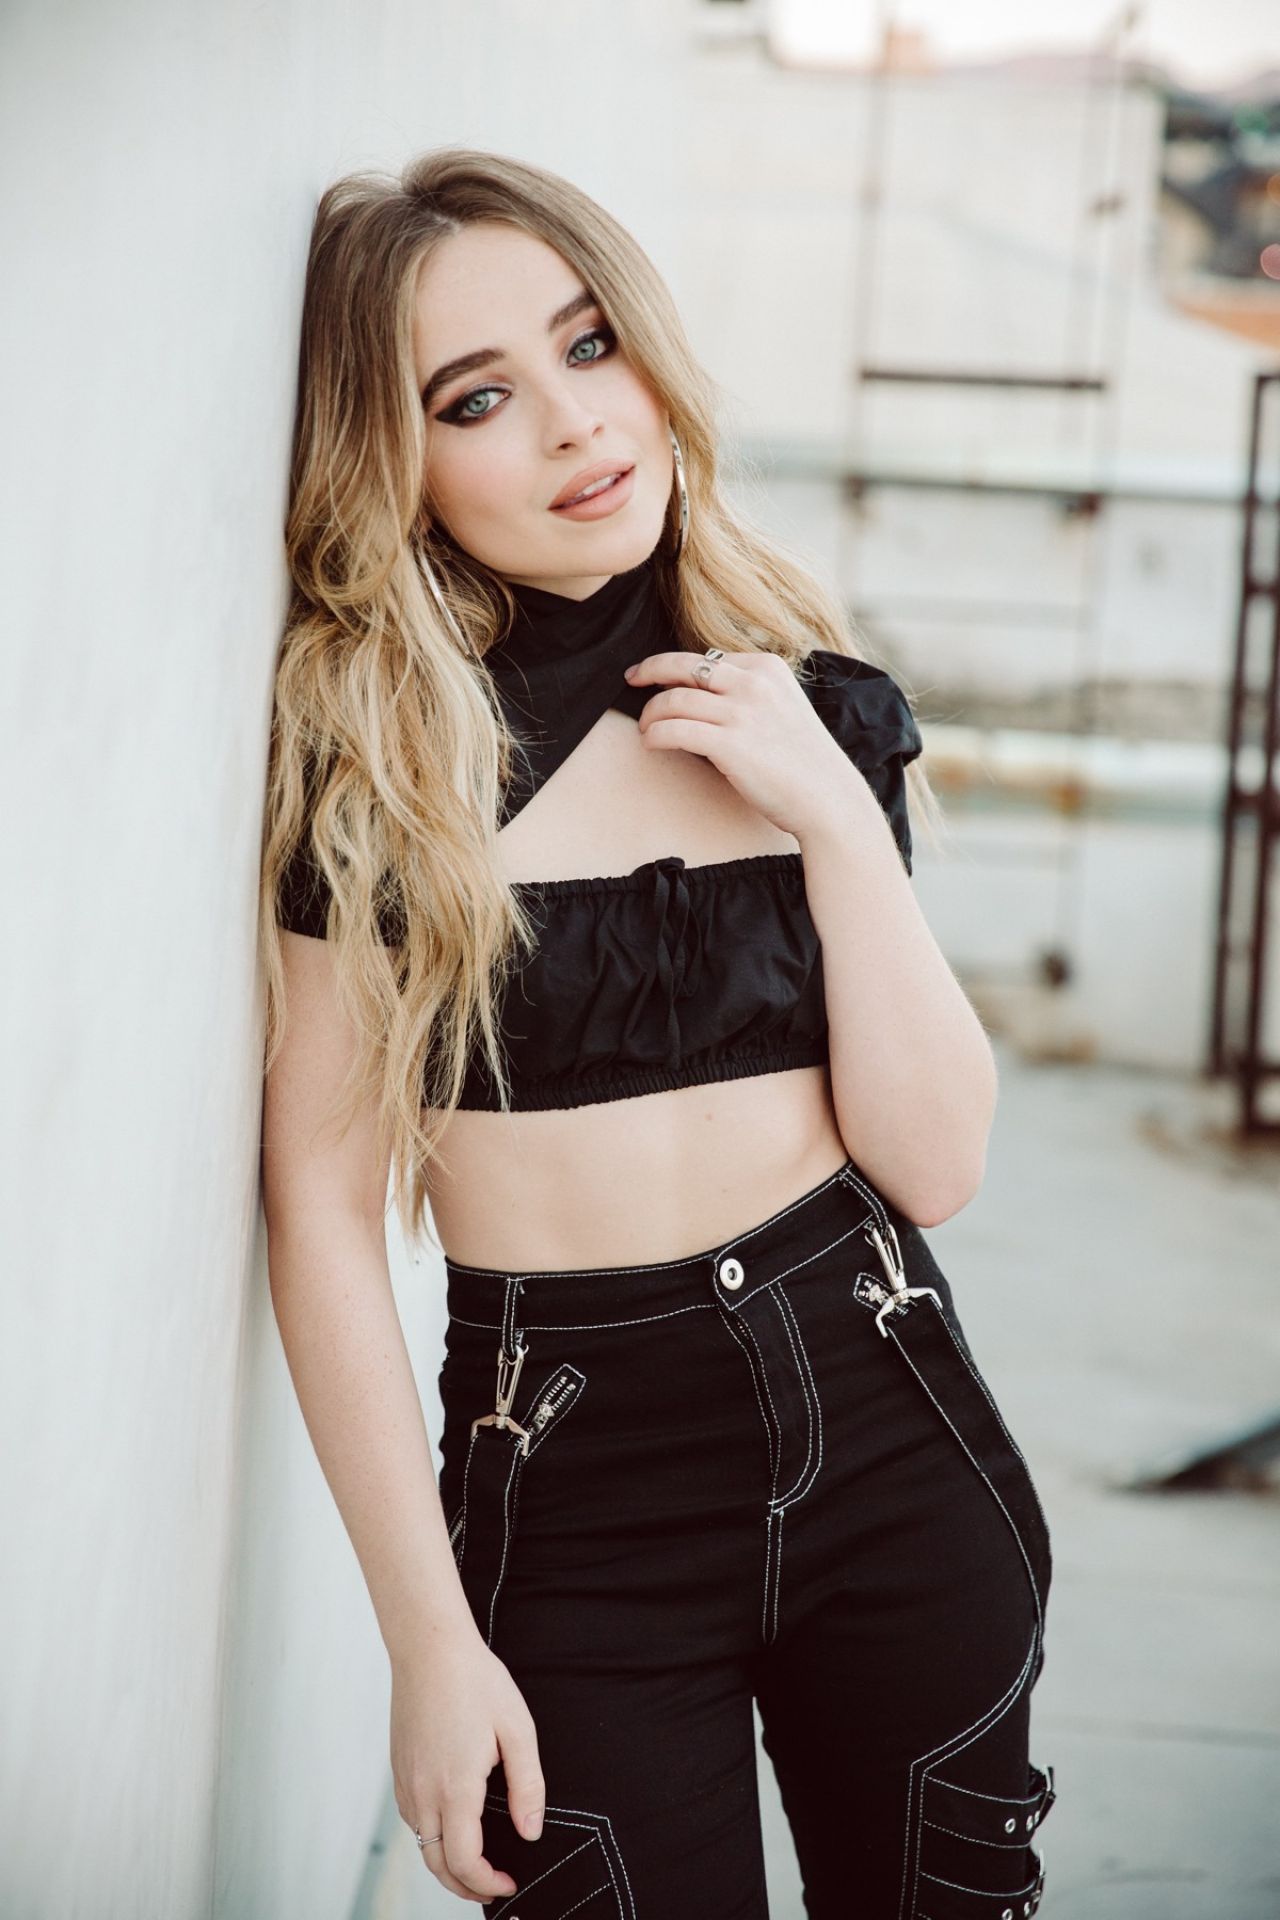 Sabrina Carpenter Photoshoot October 2019 4 